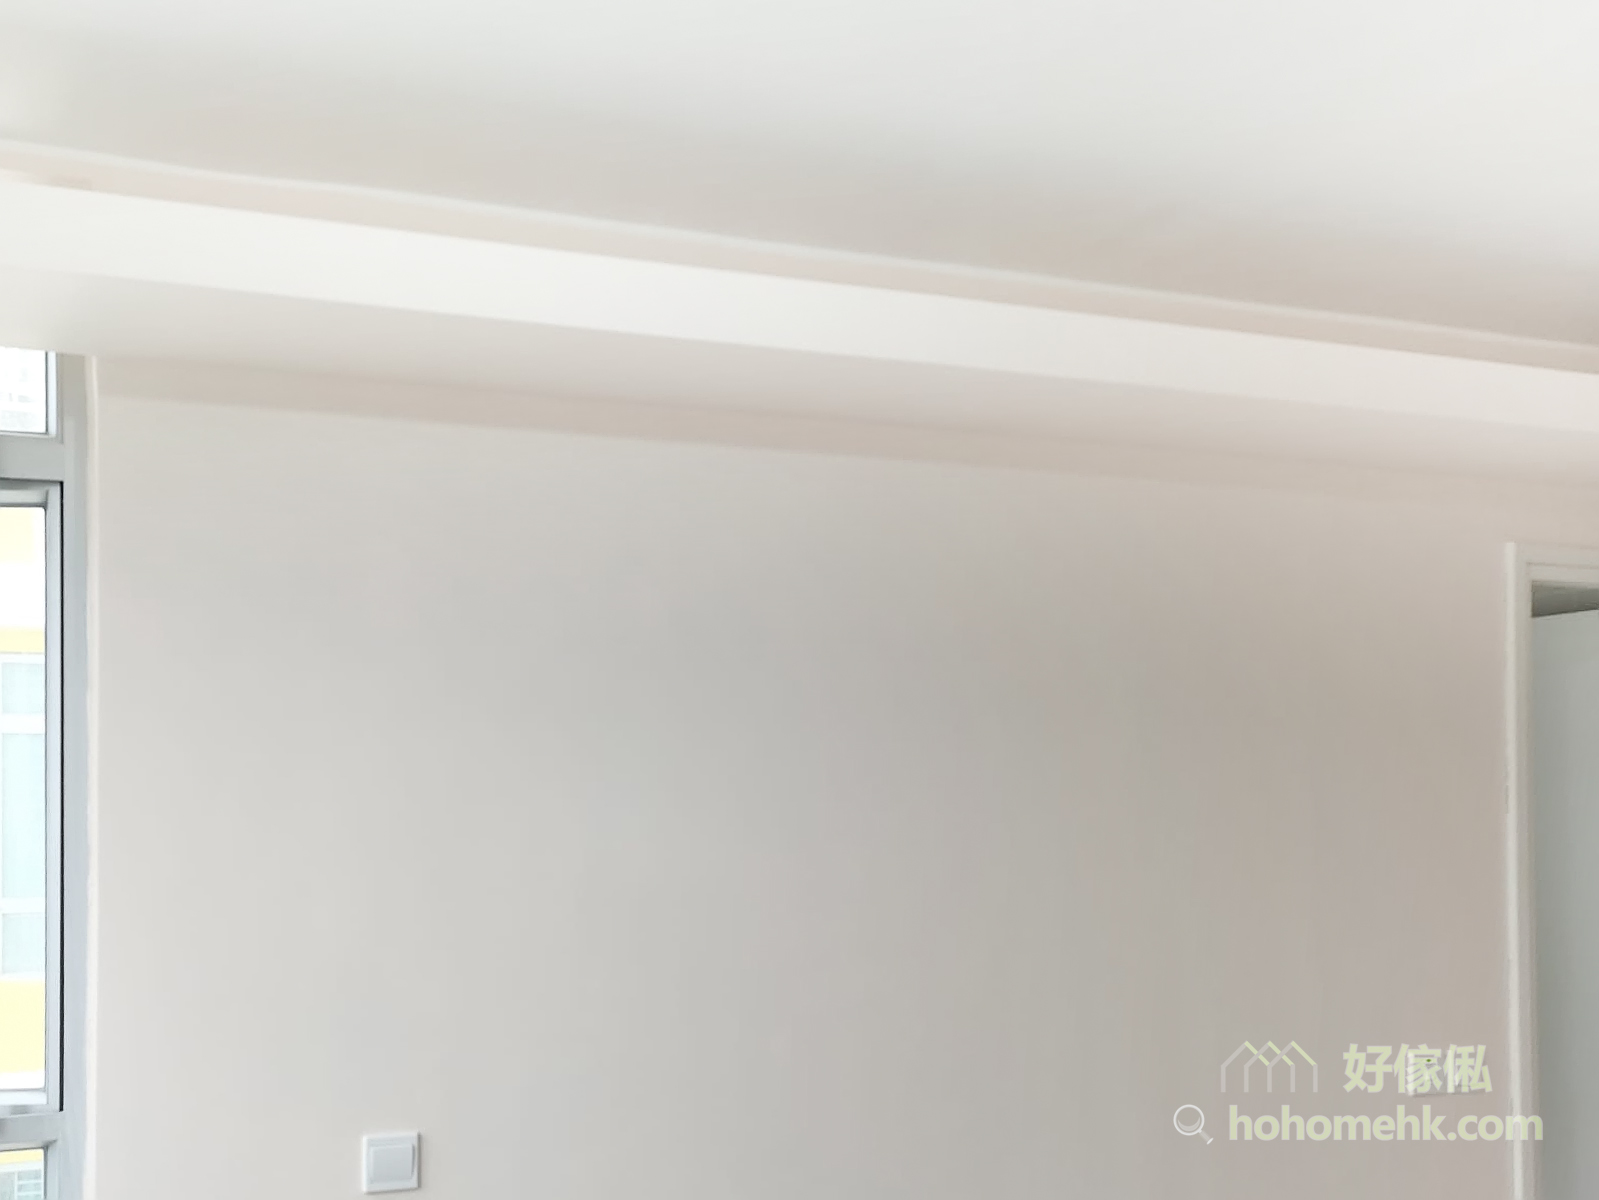 木板除了可以用來做系統櫃和隔間外，還可以建造天花板燈槽。圍著全屋空間訂做一整列的燈槽，柔和的光線讓空間充滿溫馨感與造型感